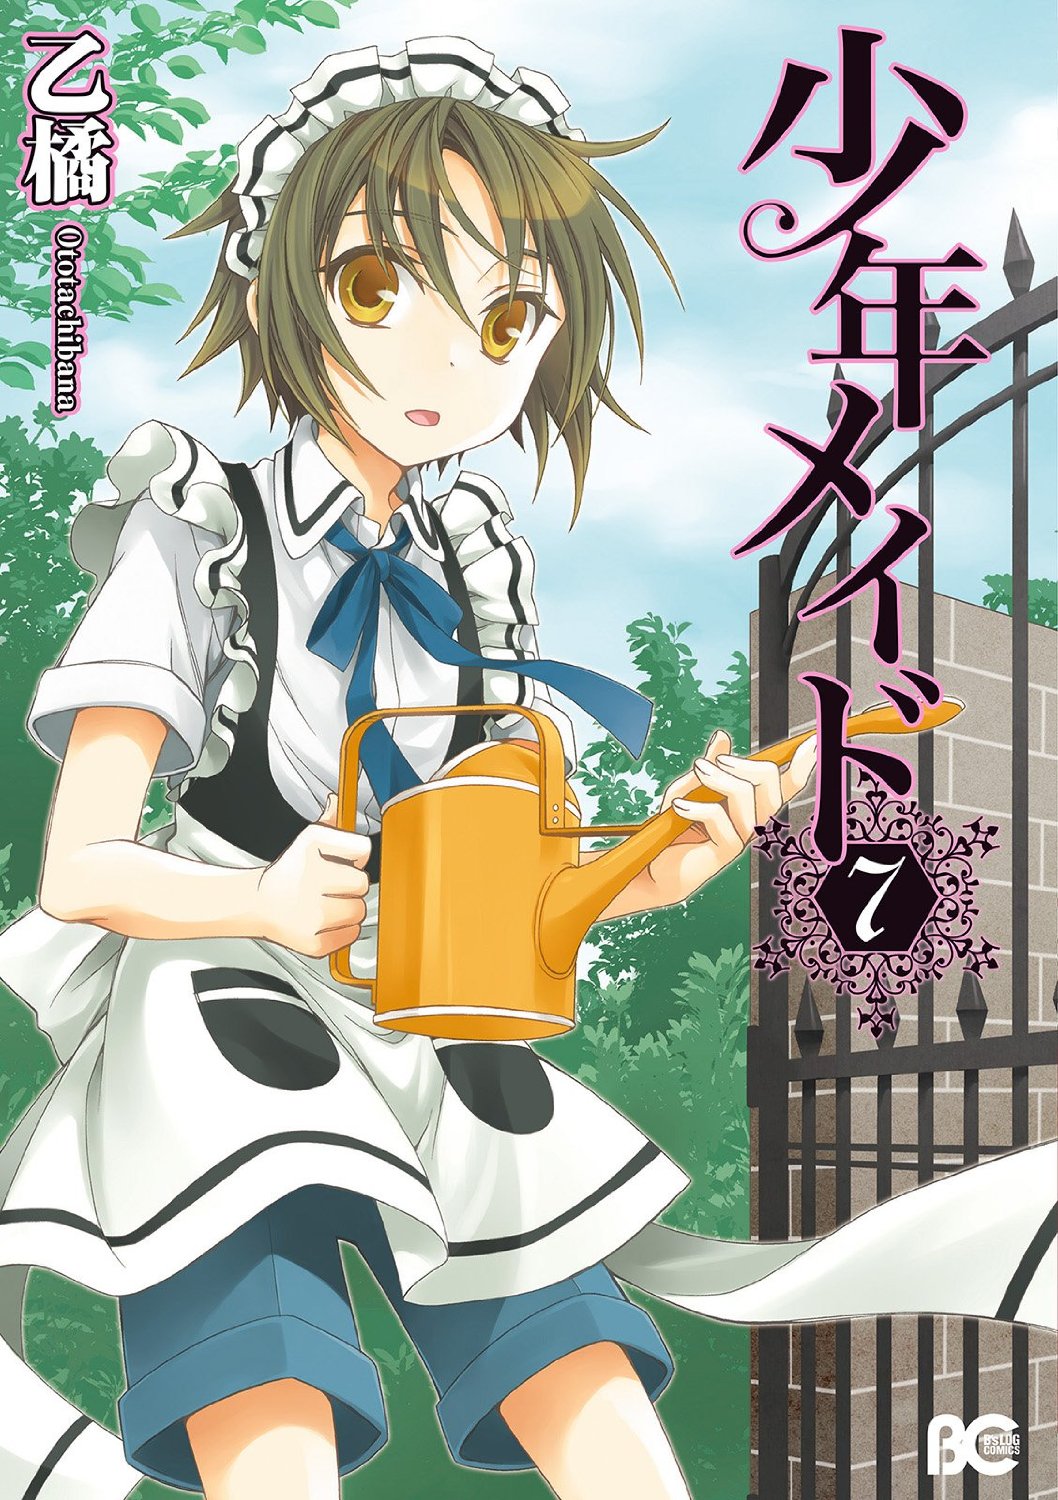 Shounen Maid Manga Vol 7 - Haruhichan Network - Anime news and more!